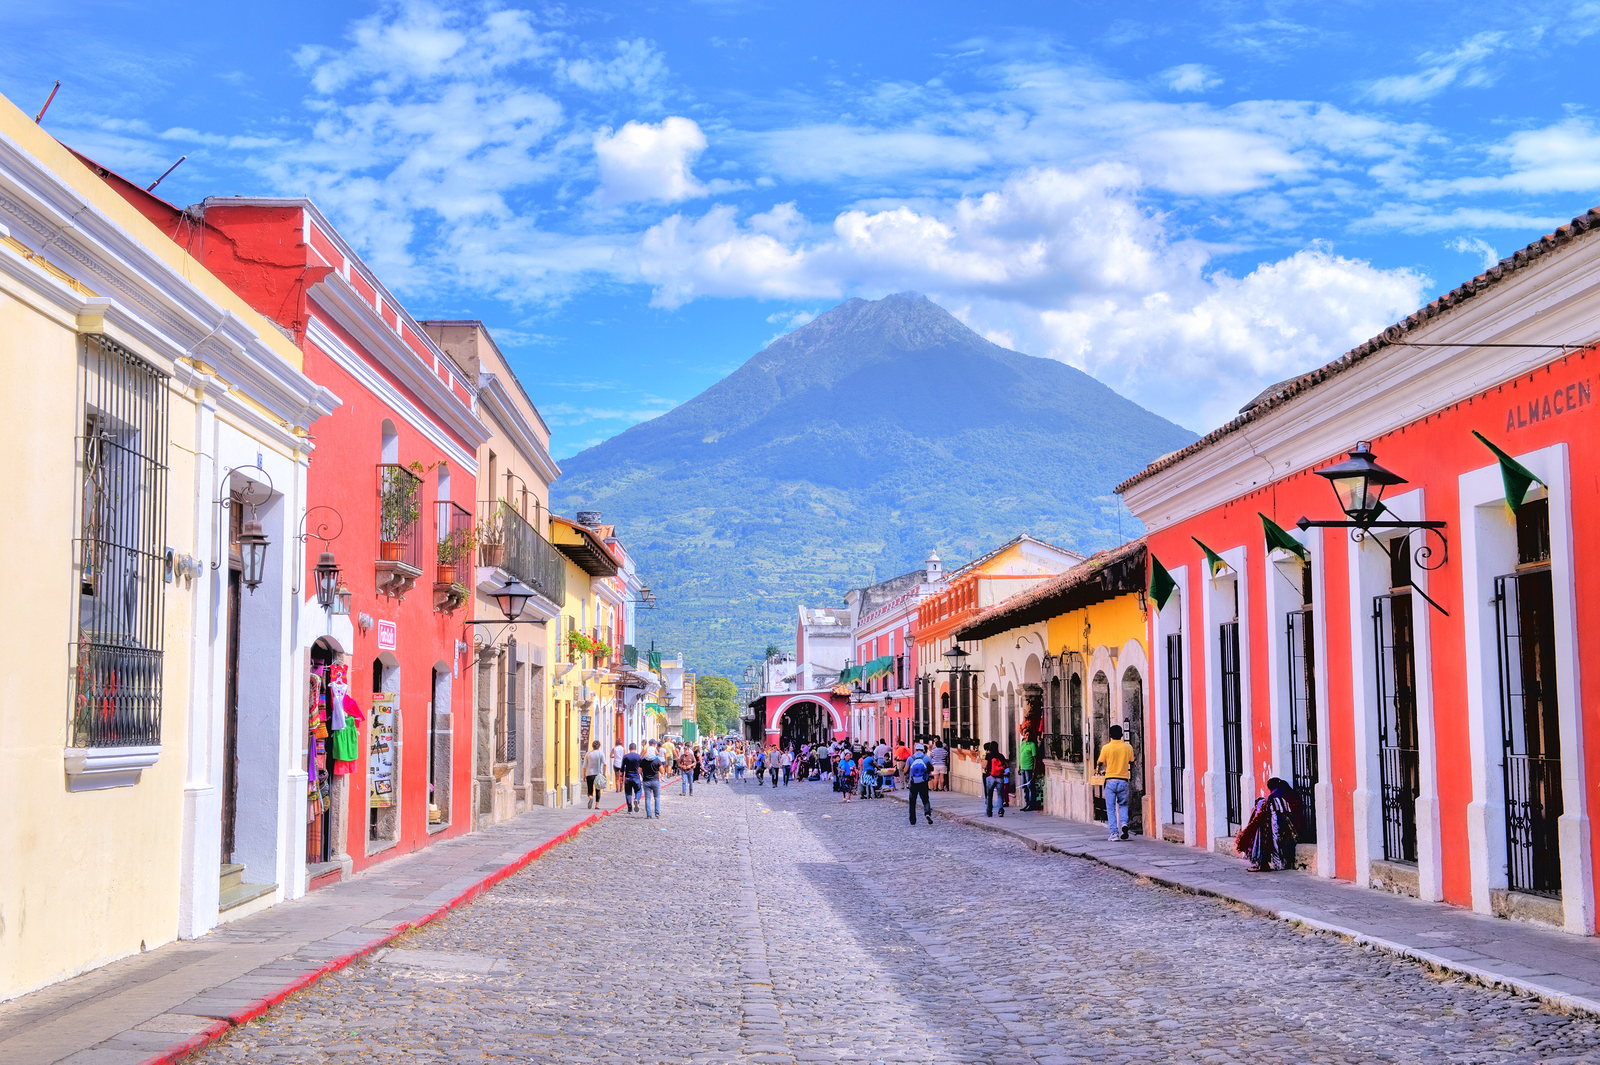 Explore Guatemala - Epicurean Travel